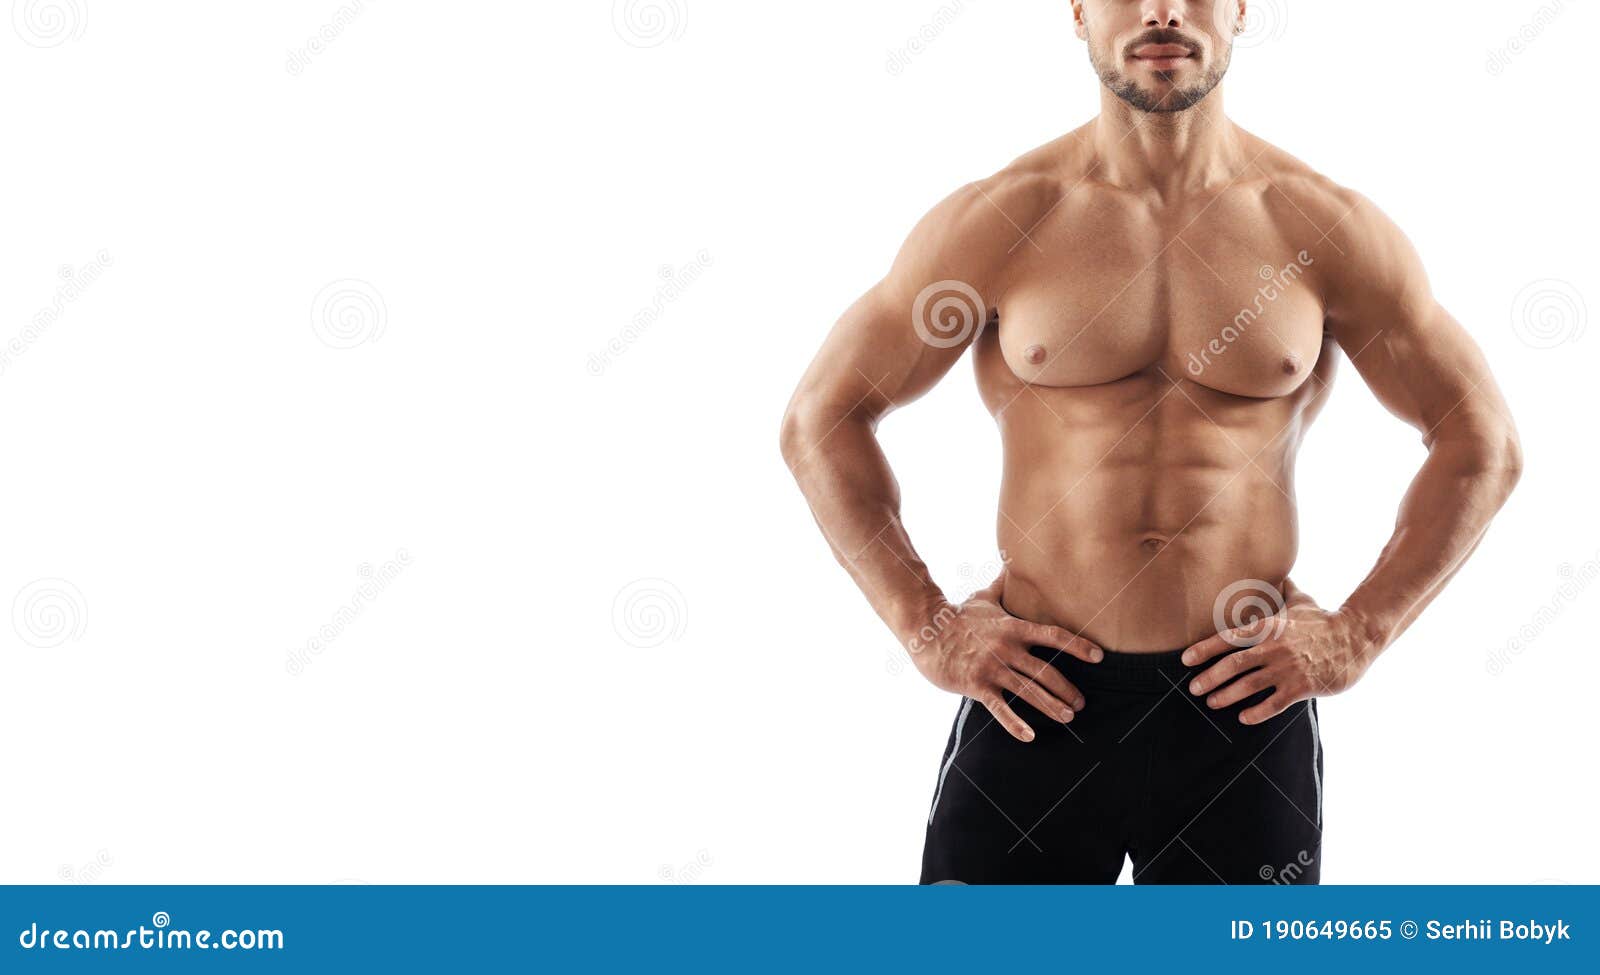 Shirtless Sportsman Posing In Gym. Stock Photo - Image of 